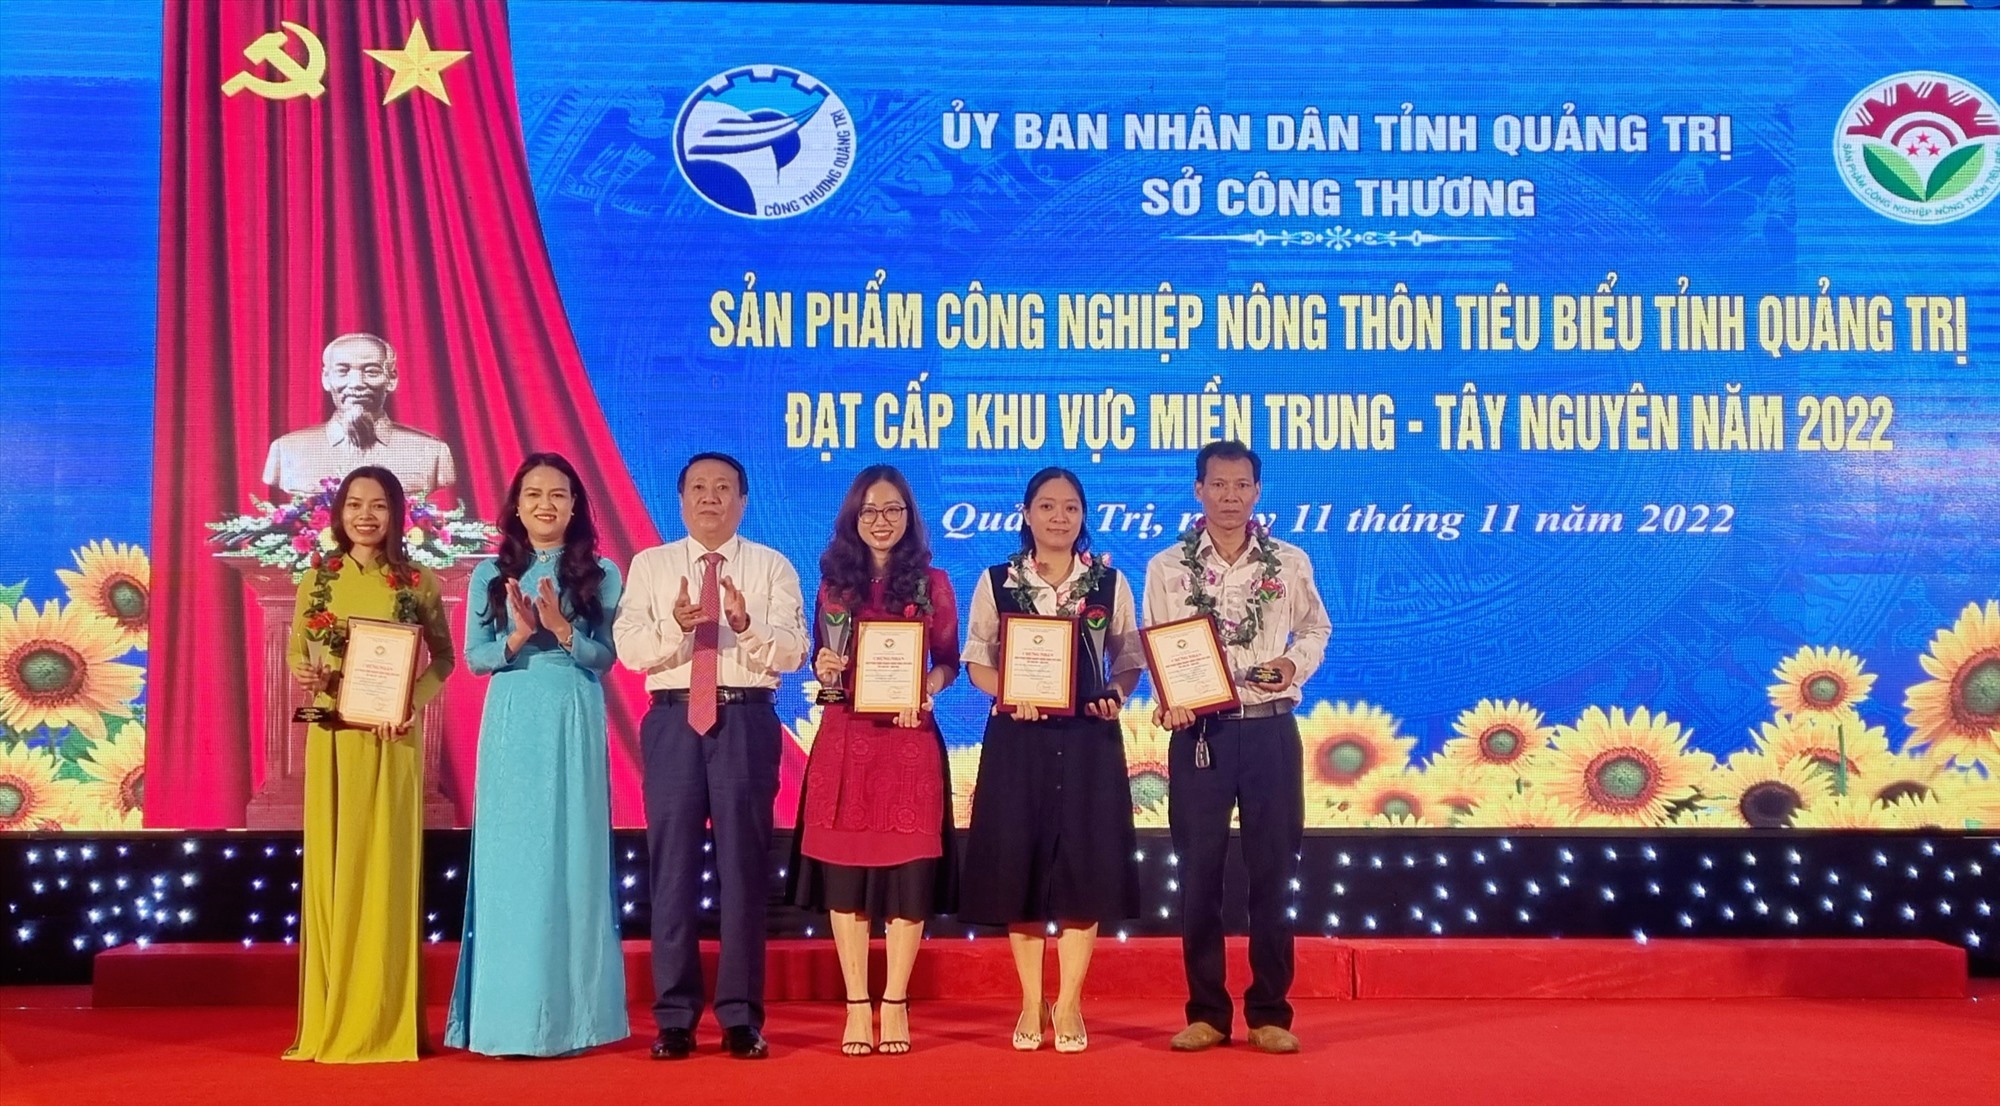 Phó Chủ tịch Thường trực UBND tỉnh Hà Sỹ Đồng trao Giấy chứng nhận của Cục Công thương địa phương cho 4 sản phẩm CNNT tiêu biểu khu vực miền Trung - Tây Nguyên năm 2022 - Ảnh: K.S